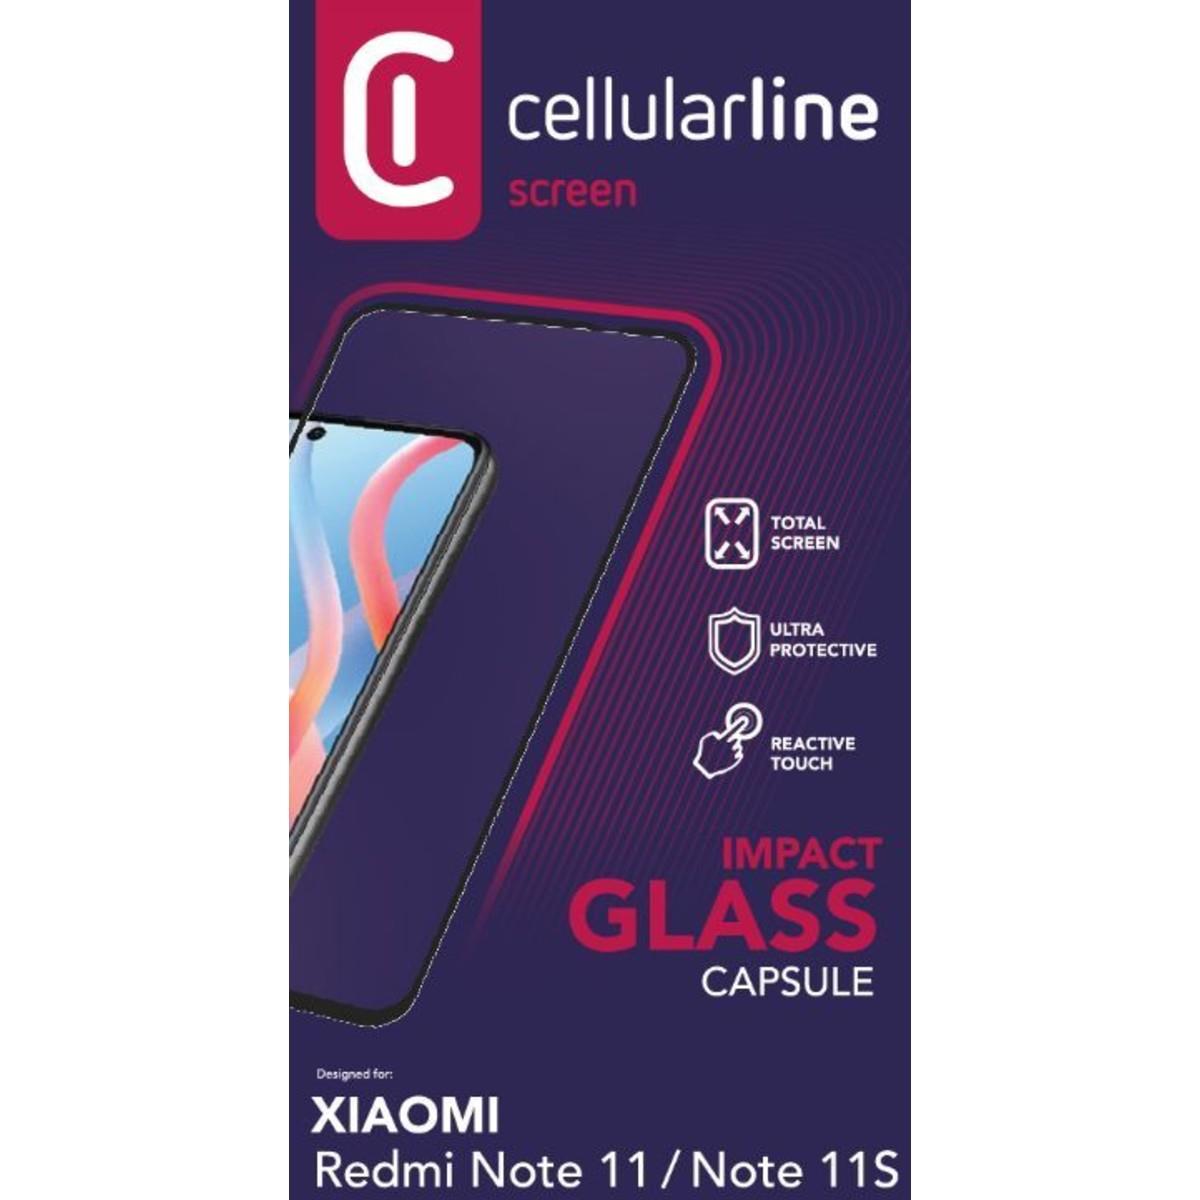 Schutzglas IMPACT GLASS CAPSULE für Xiaomi Redmi Note 11/Note 11S